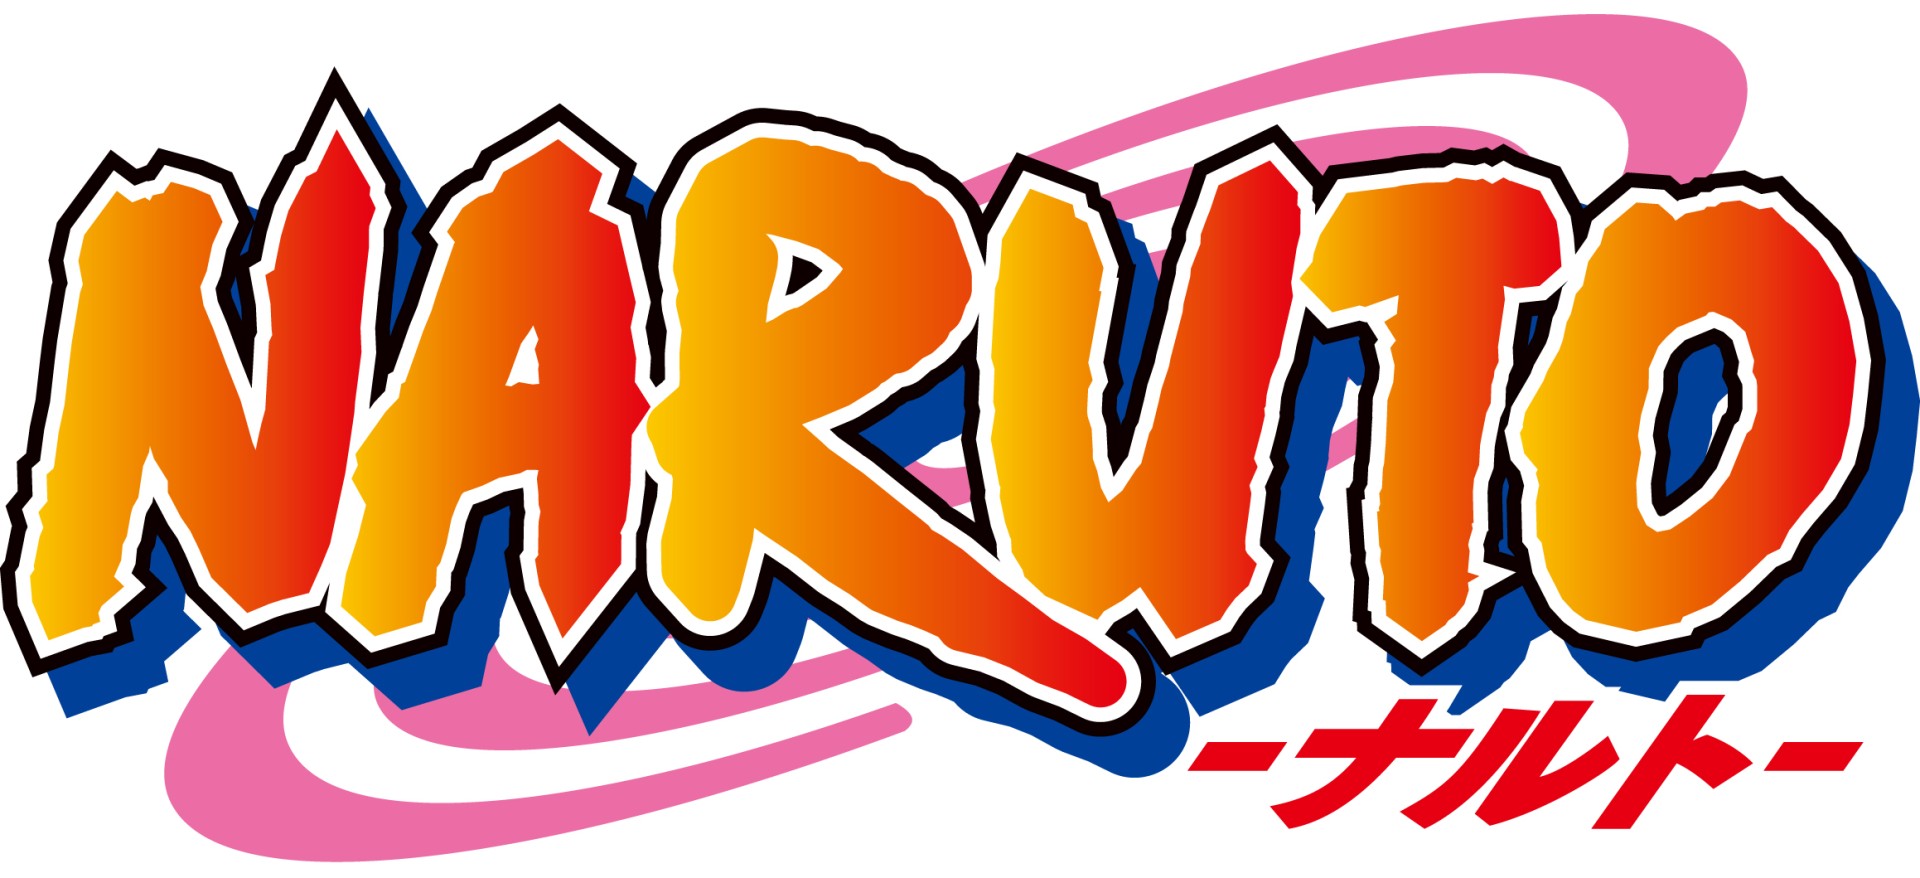 Boruto - Anime termina dia 26 de março revela site oficial - AnimeNew